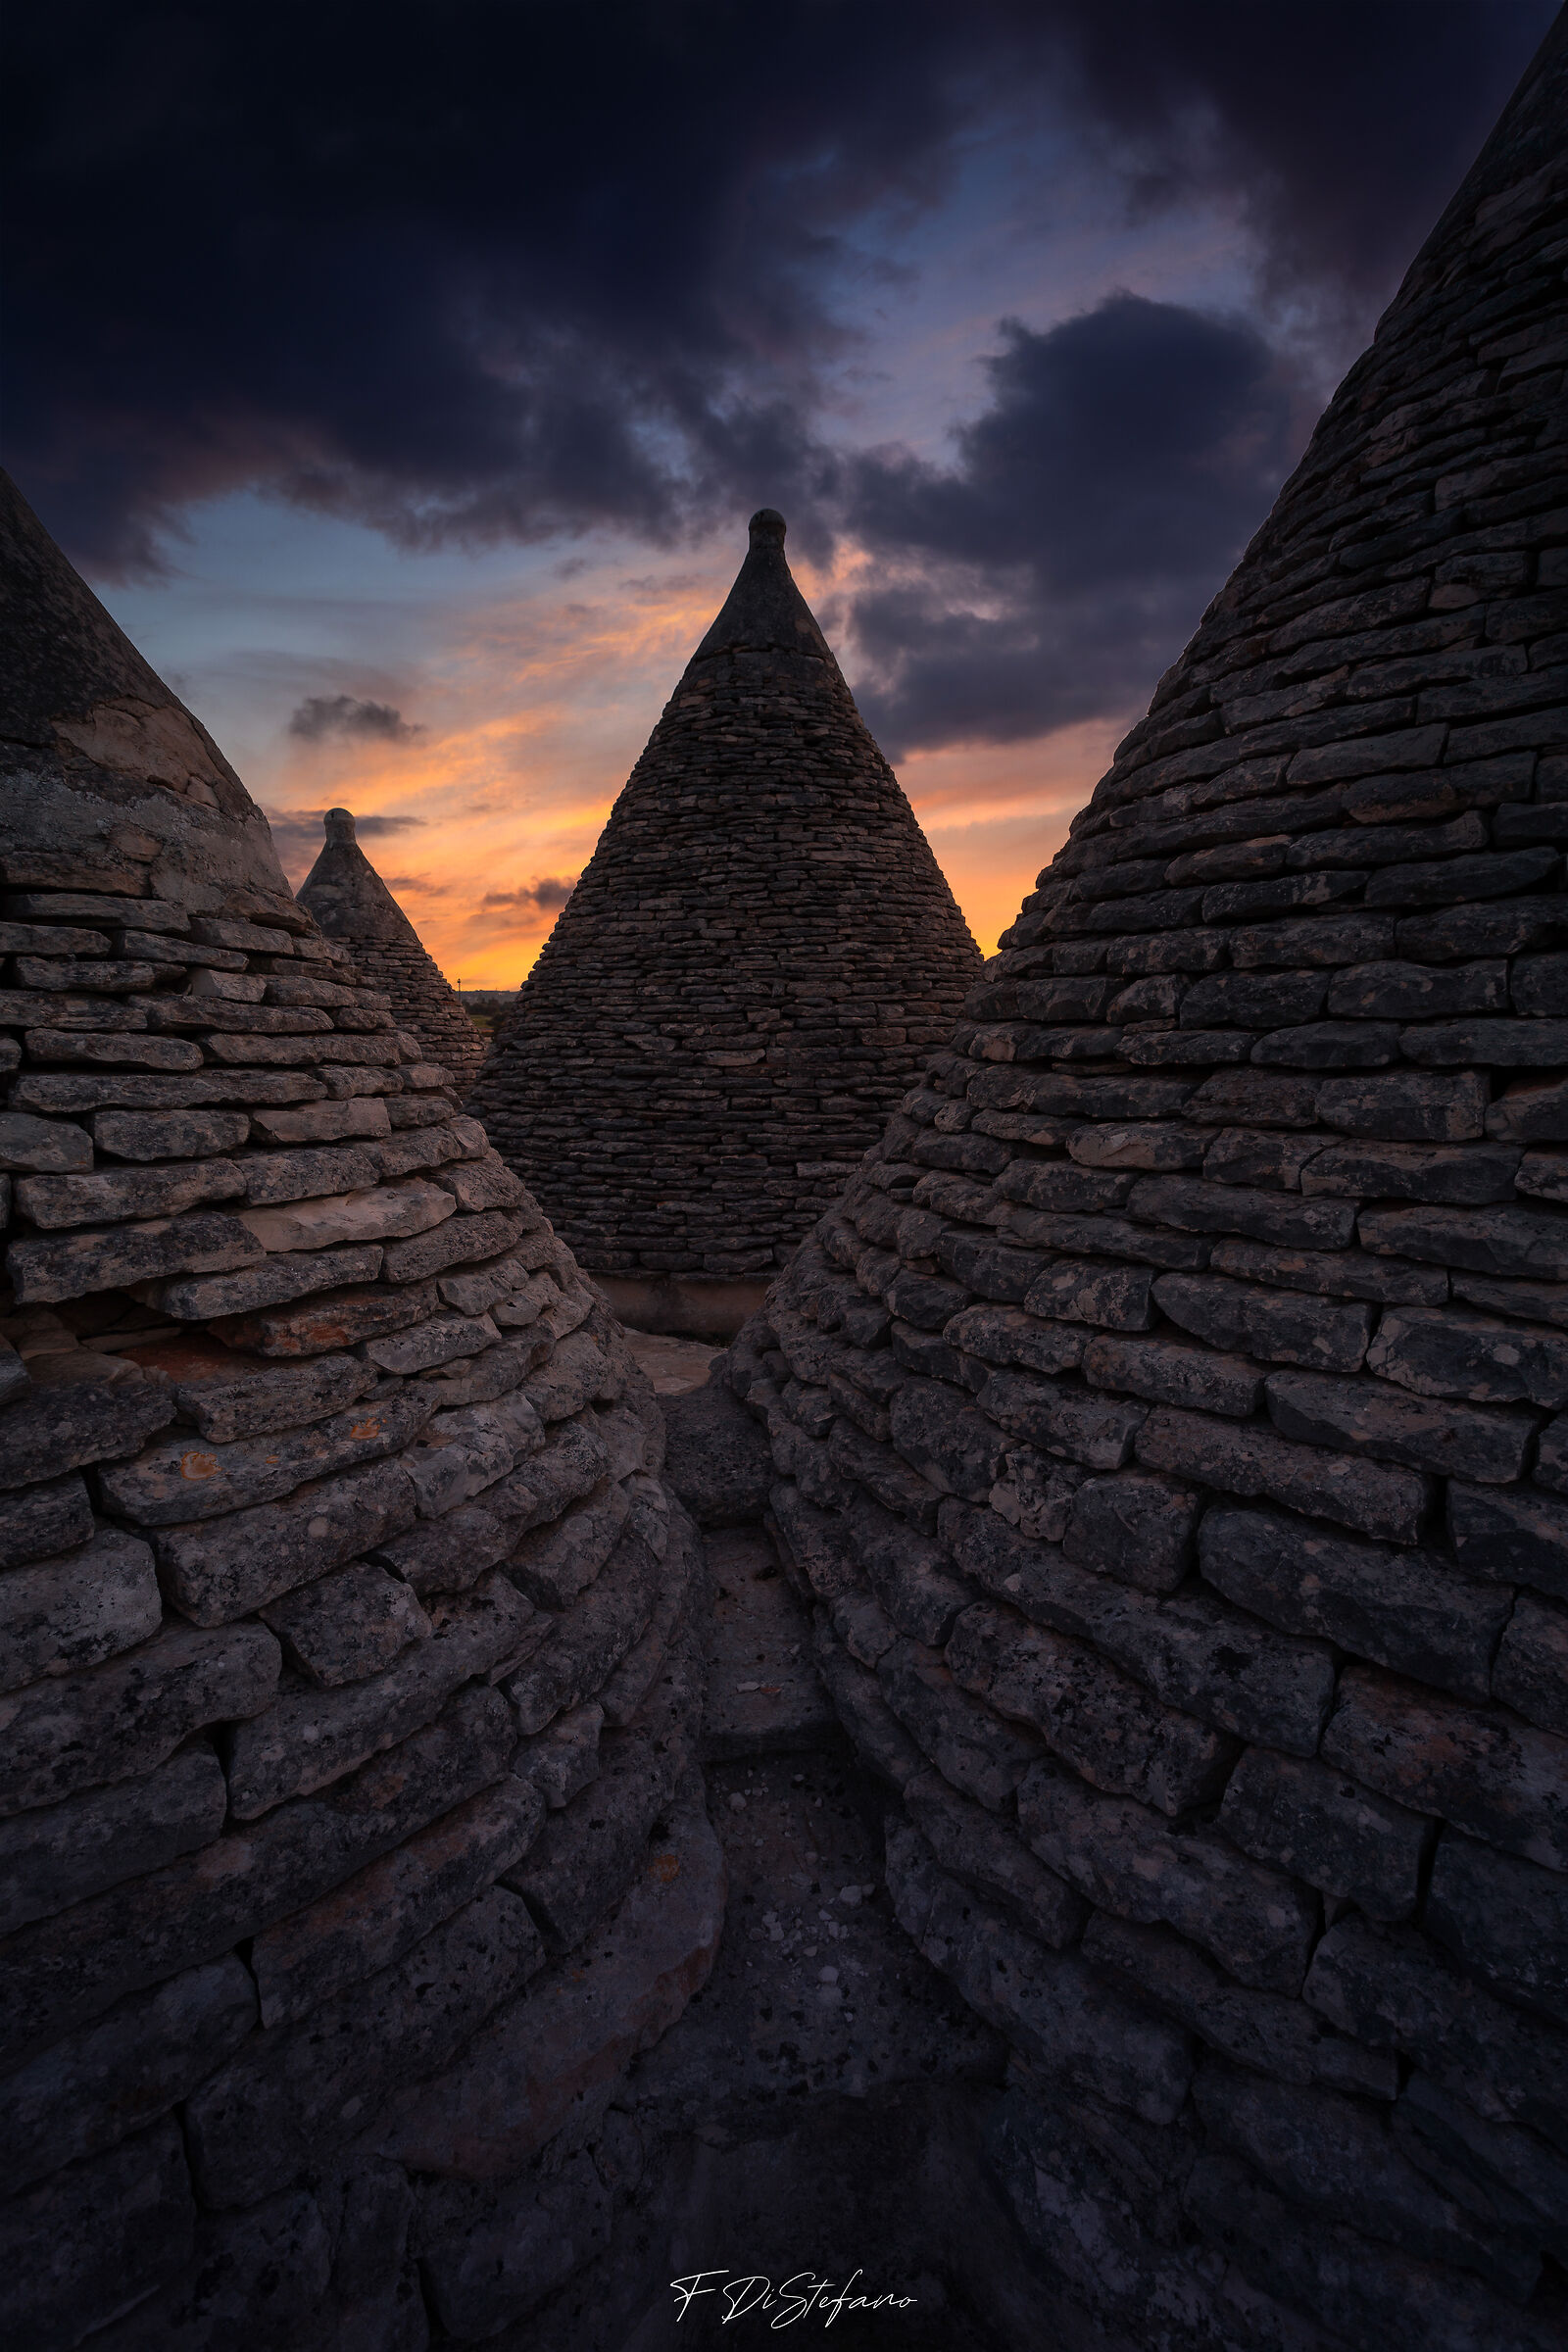 Apulian Pyramids at sunset...